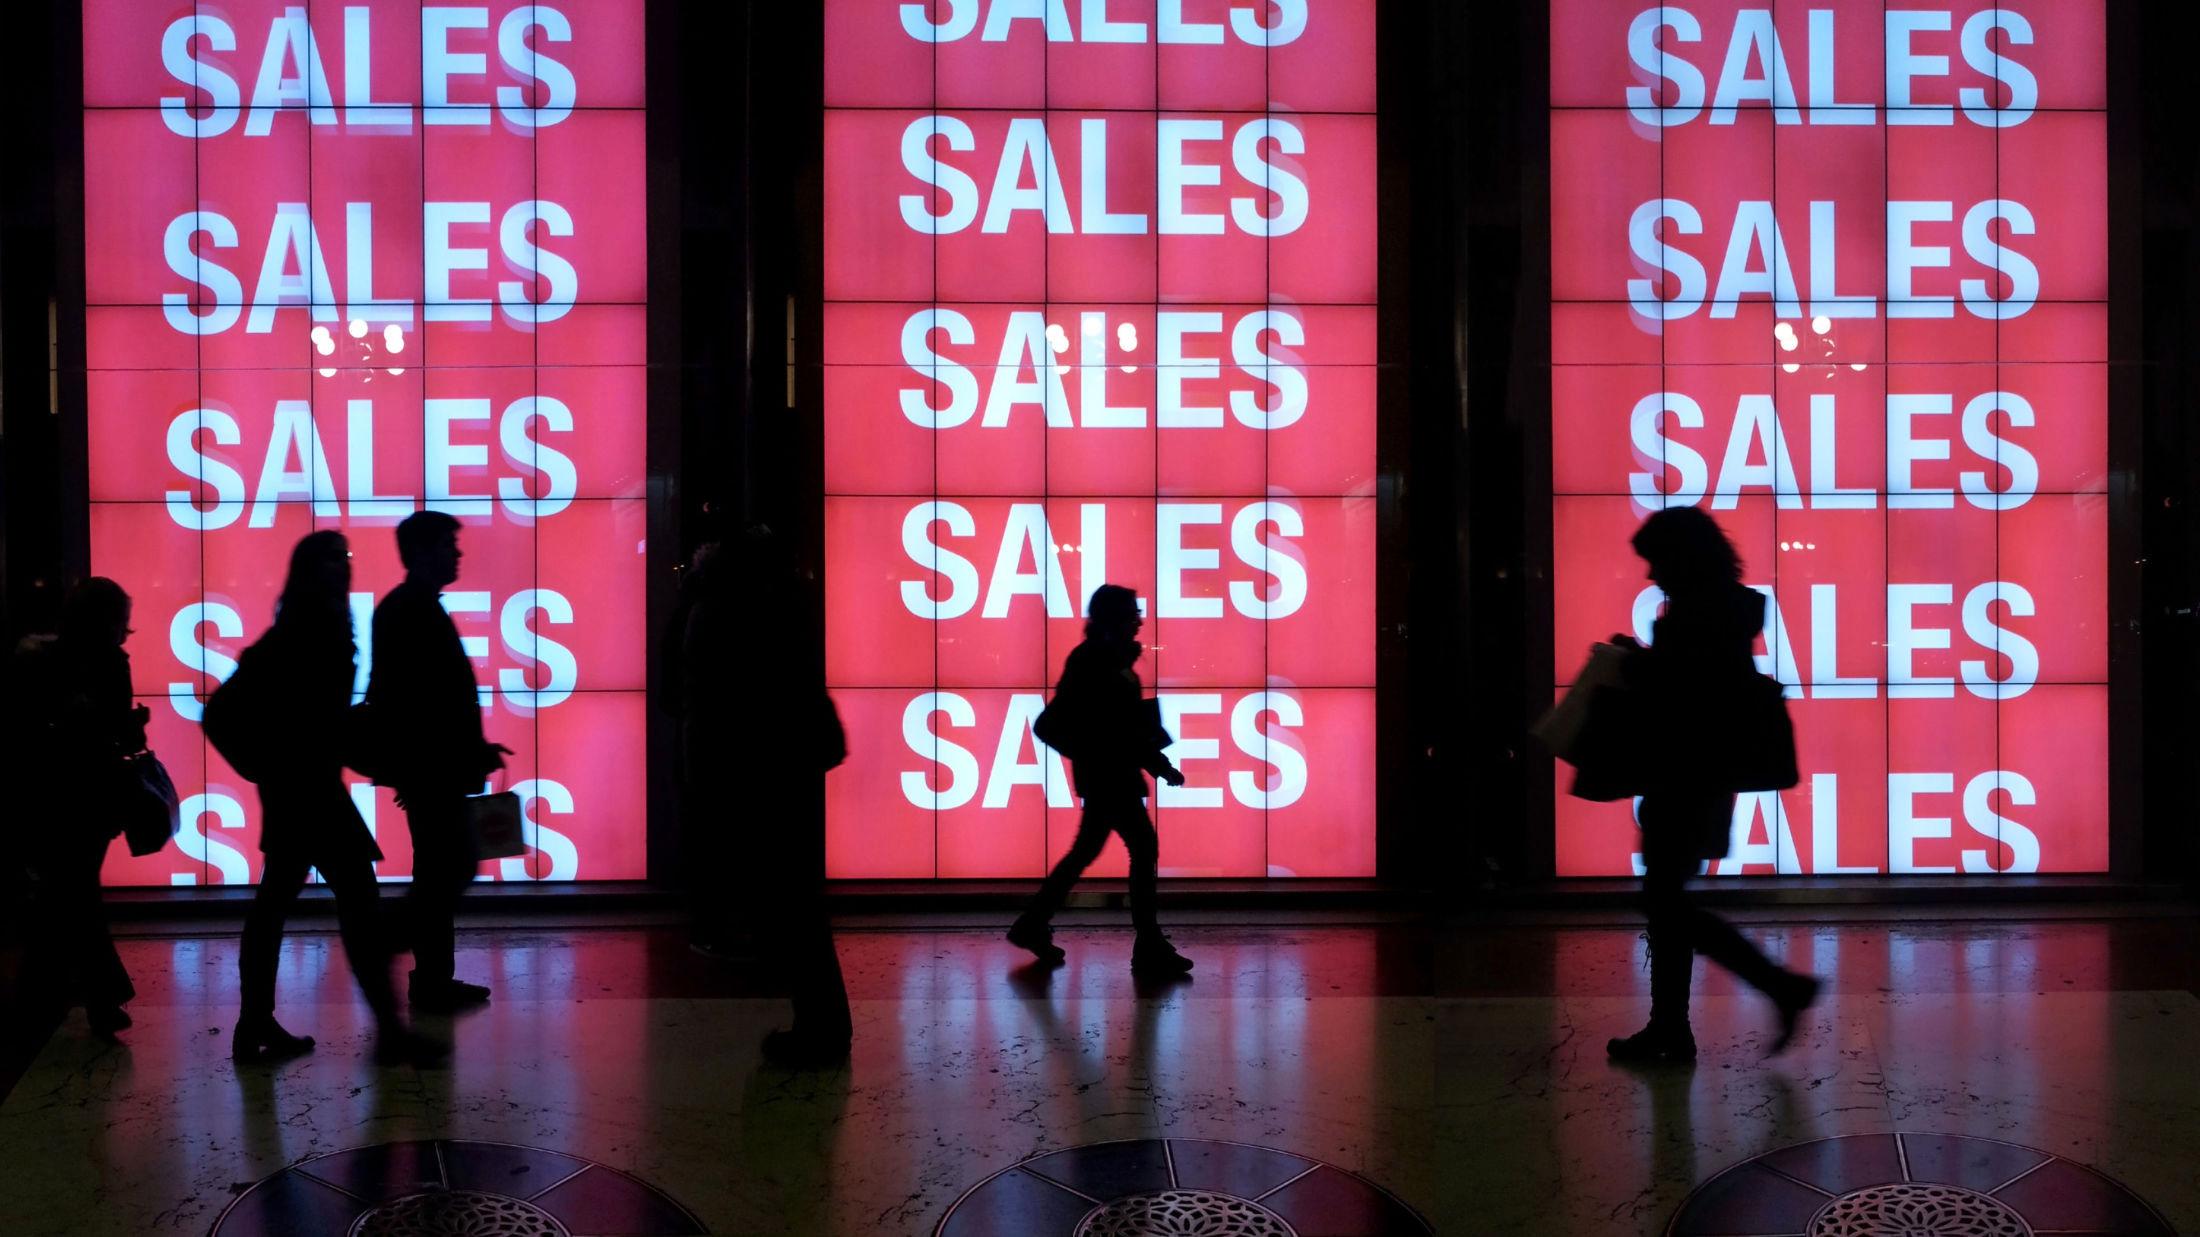 SALG SALG SALG: Årets største salg er her - nemlig romjulssalget. Foto: Getty Images